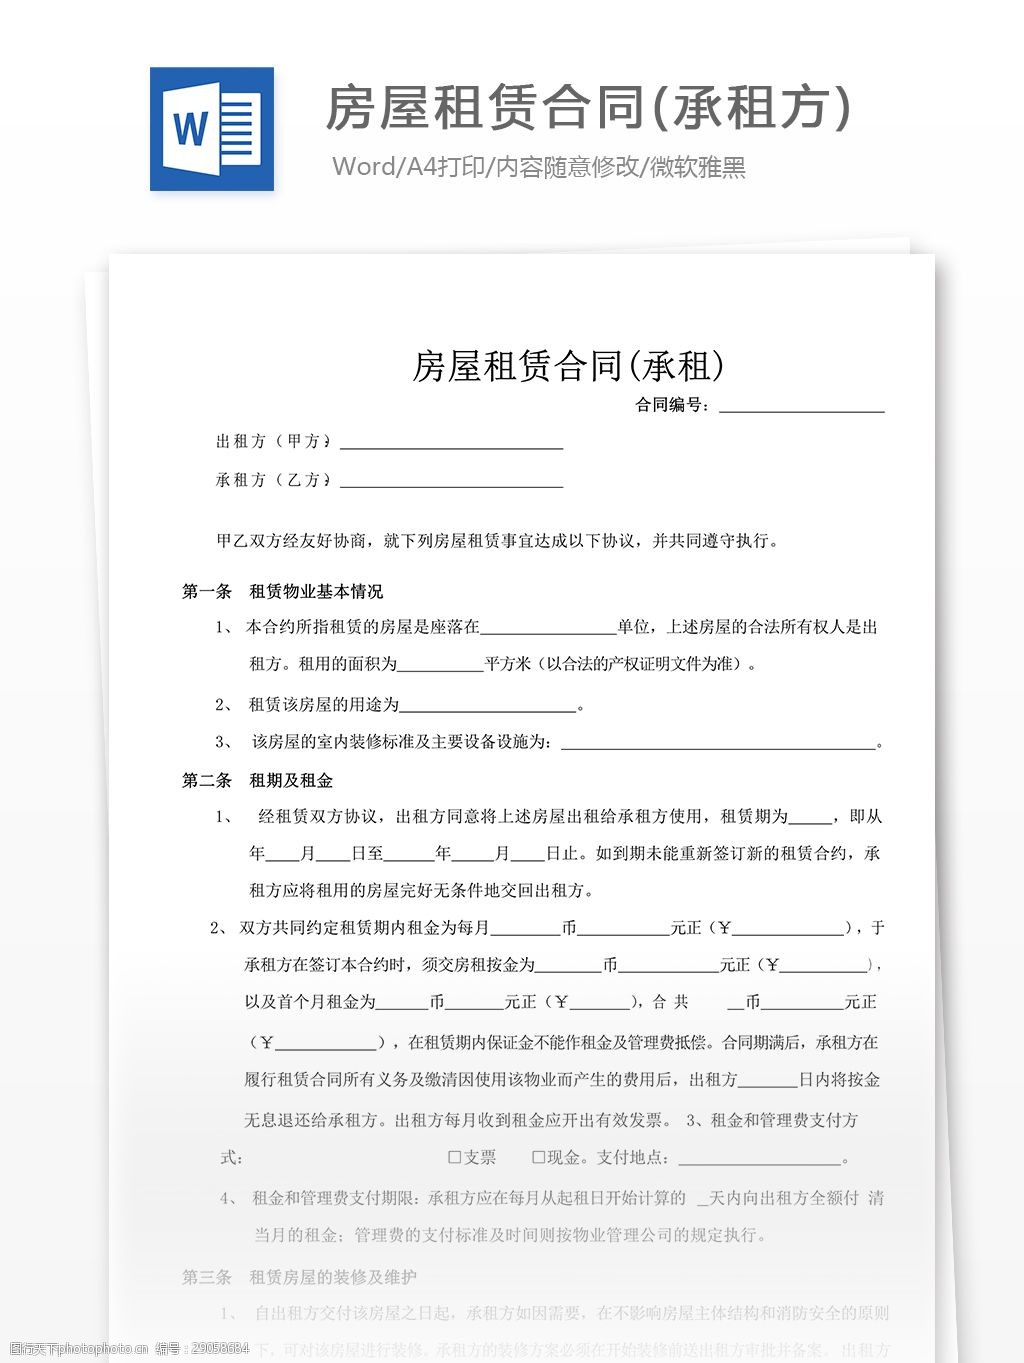 房屋租赁合同(承租方)合同协议文档